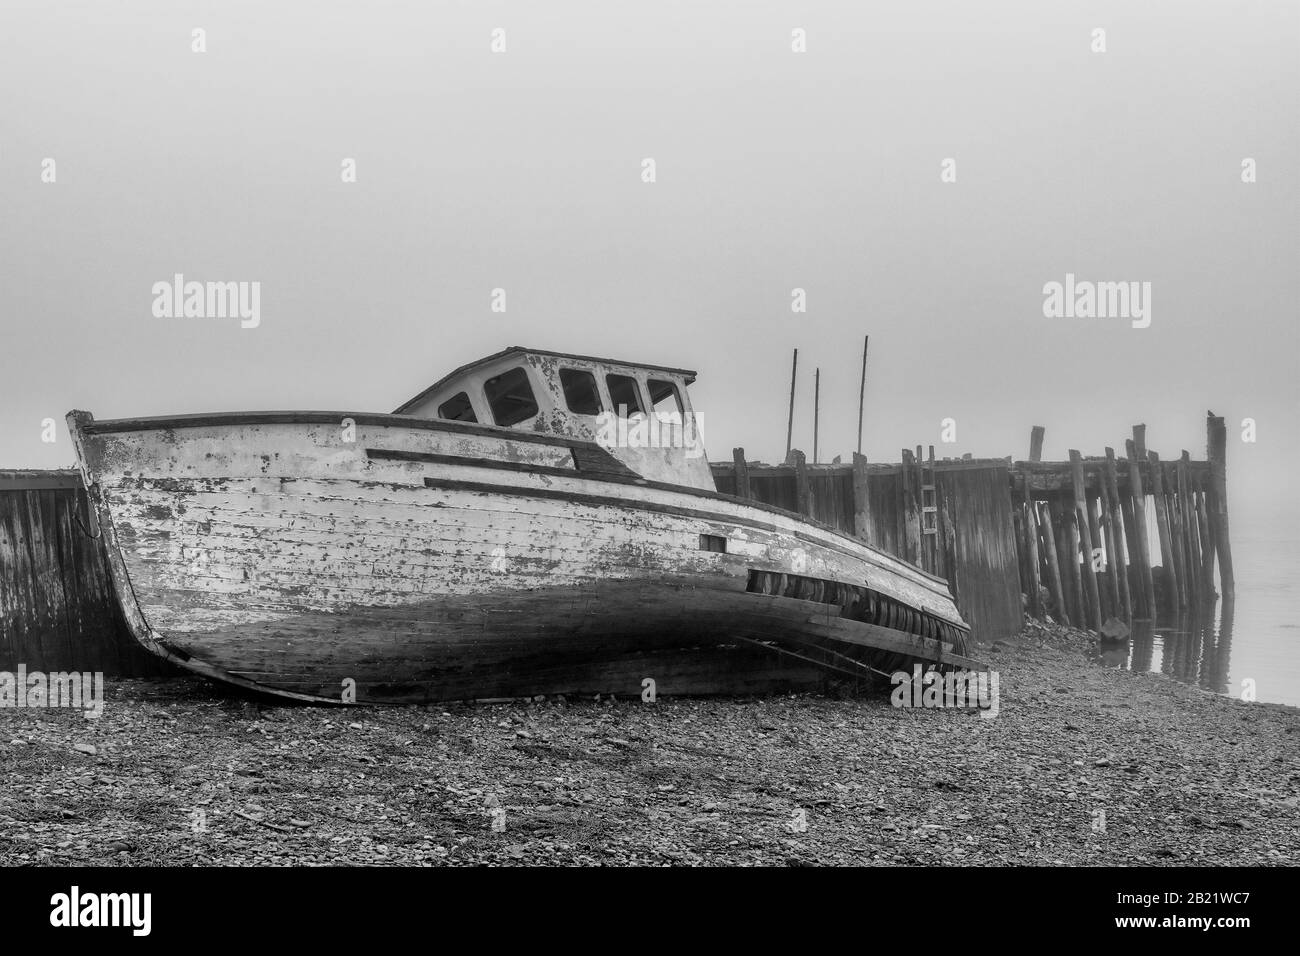 Un bateau naufragé sur la rive à côté d'un vieux quai abandonné en une journée très molle. Le bateau est en très mauvais état et tombe en dehors. Marée basse. Banque D'Images